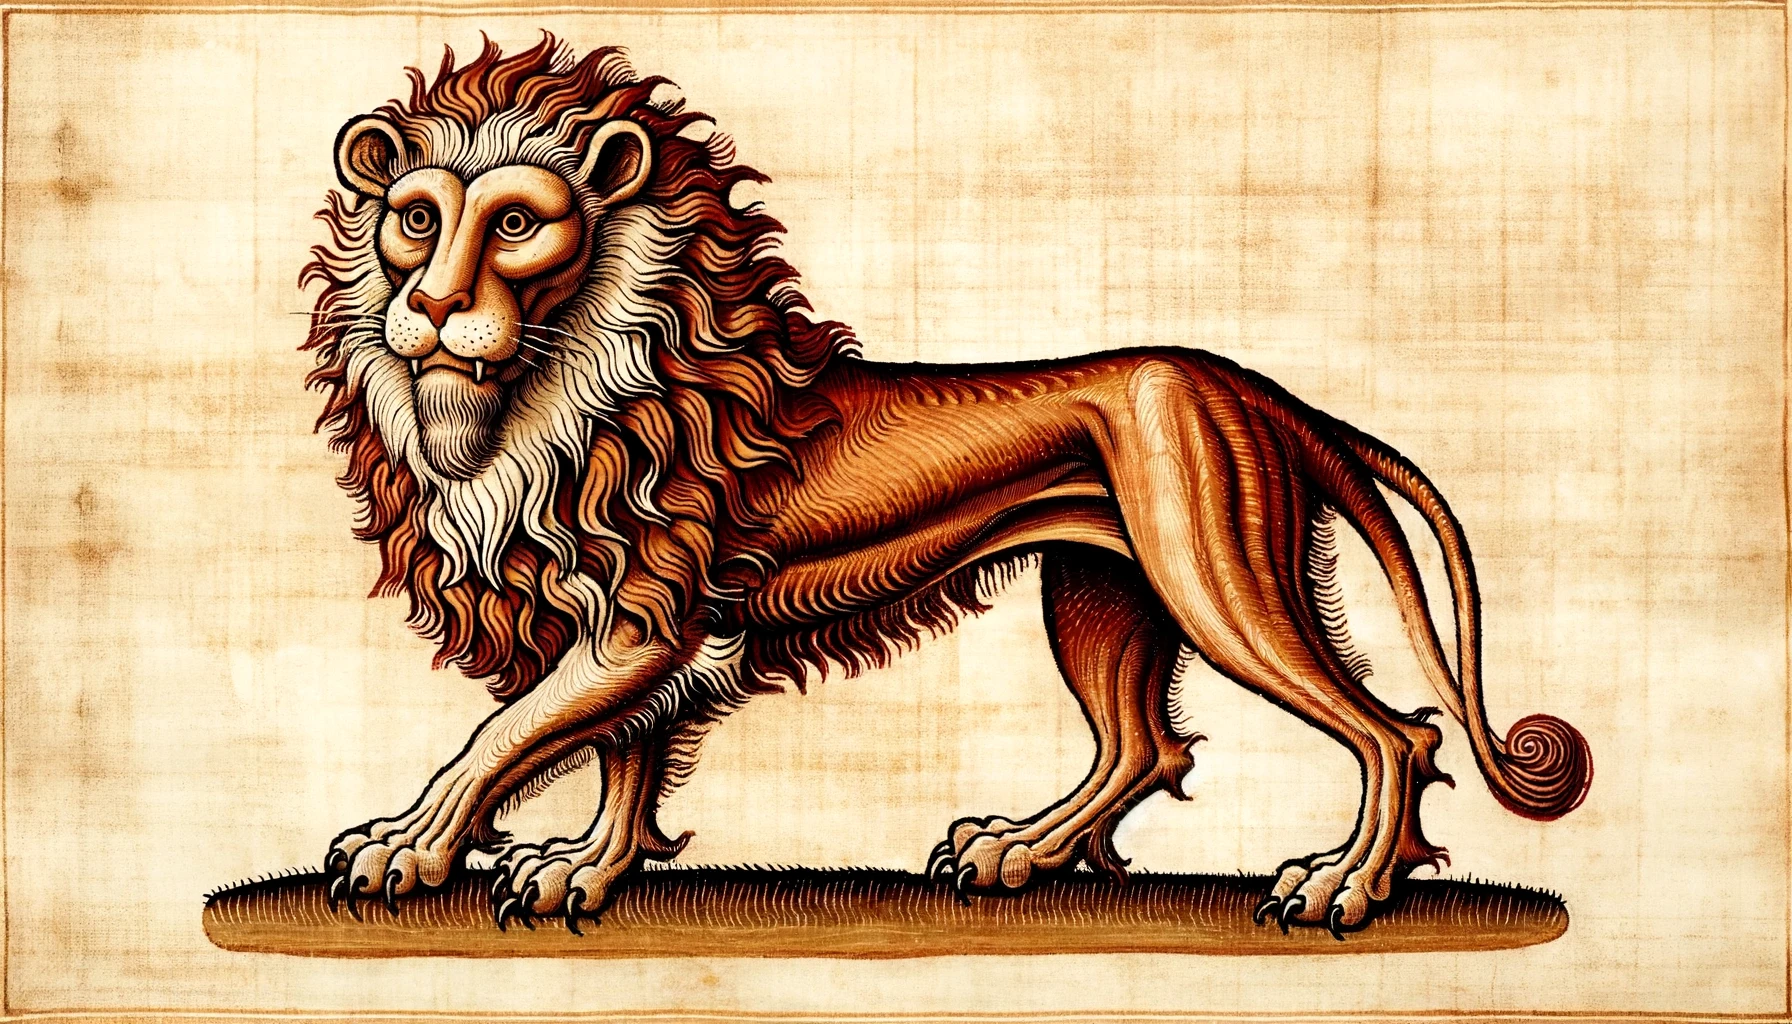 Der Löwvon, eine mysthische Kreatur aus fernen Ländern